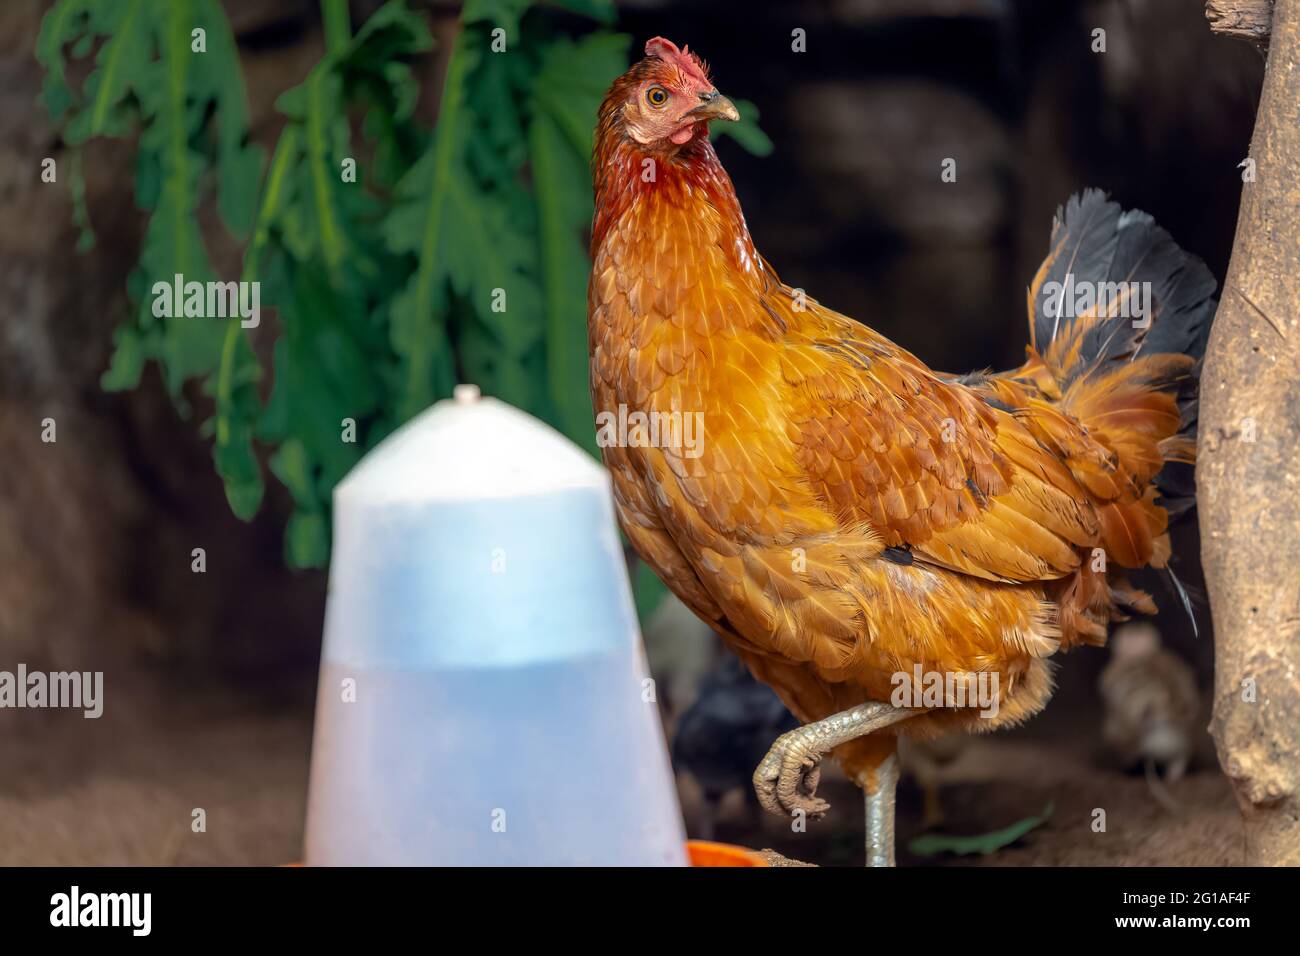 Mère poule avec bébé poussins se nourrissant dans la cour rurale. Banque D'Images